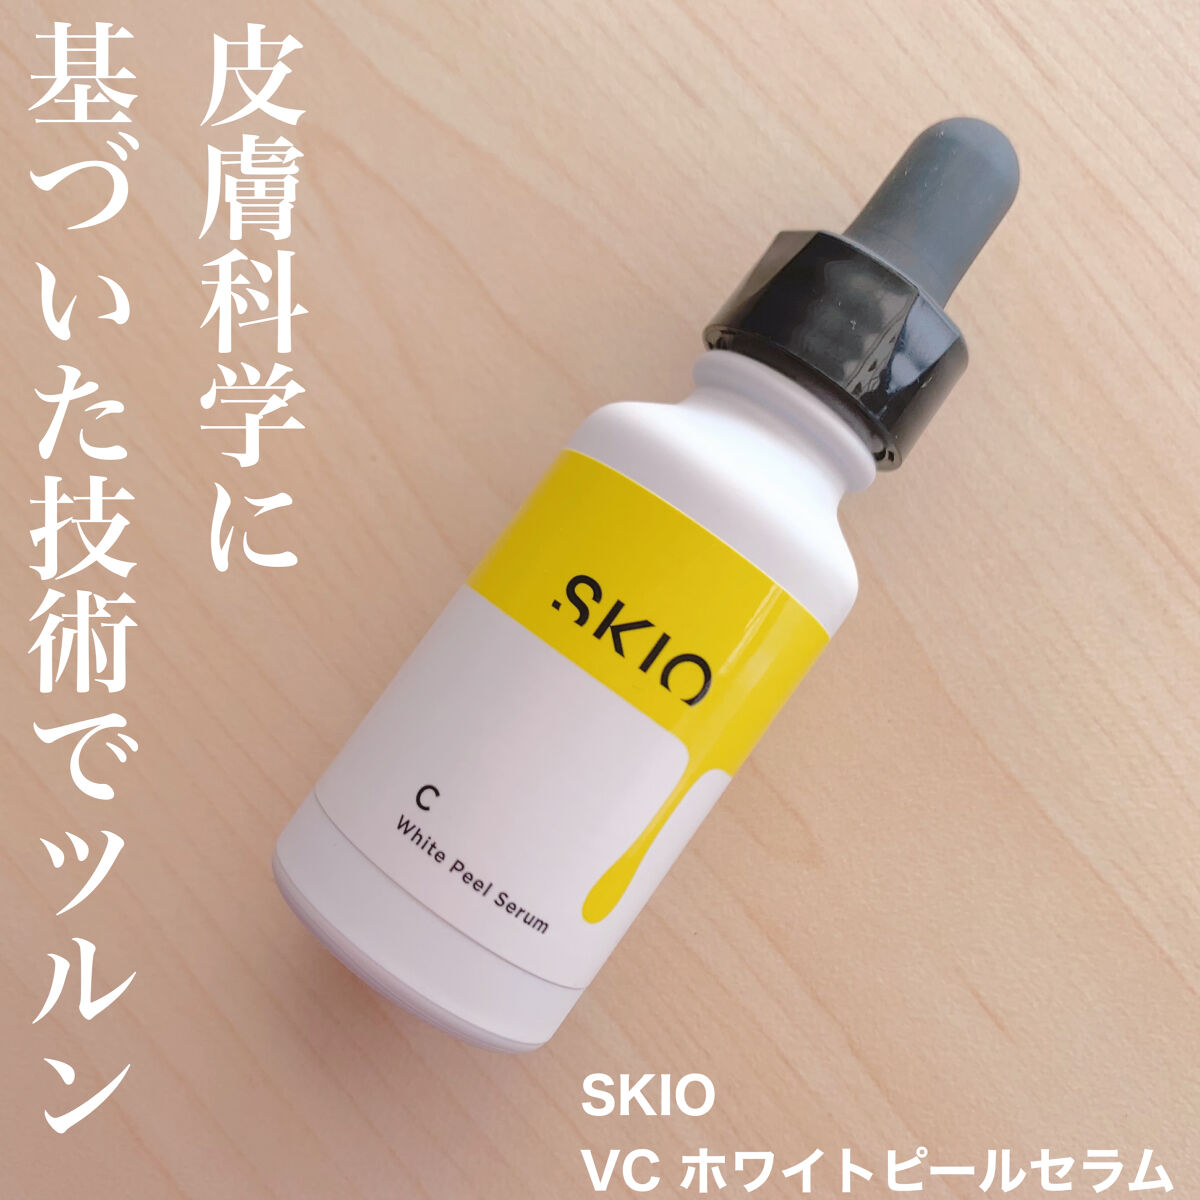 SKIO スキオVCホワイトピールセラム - 基礎化粧品